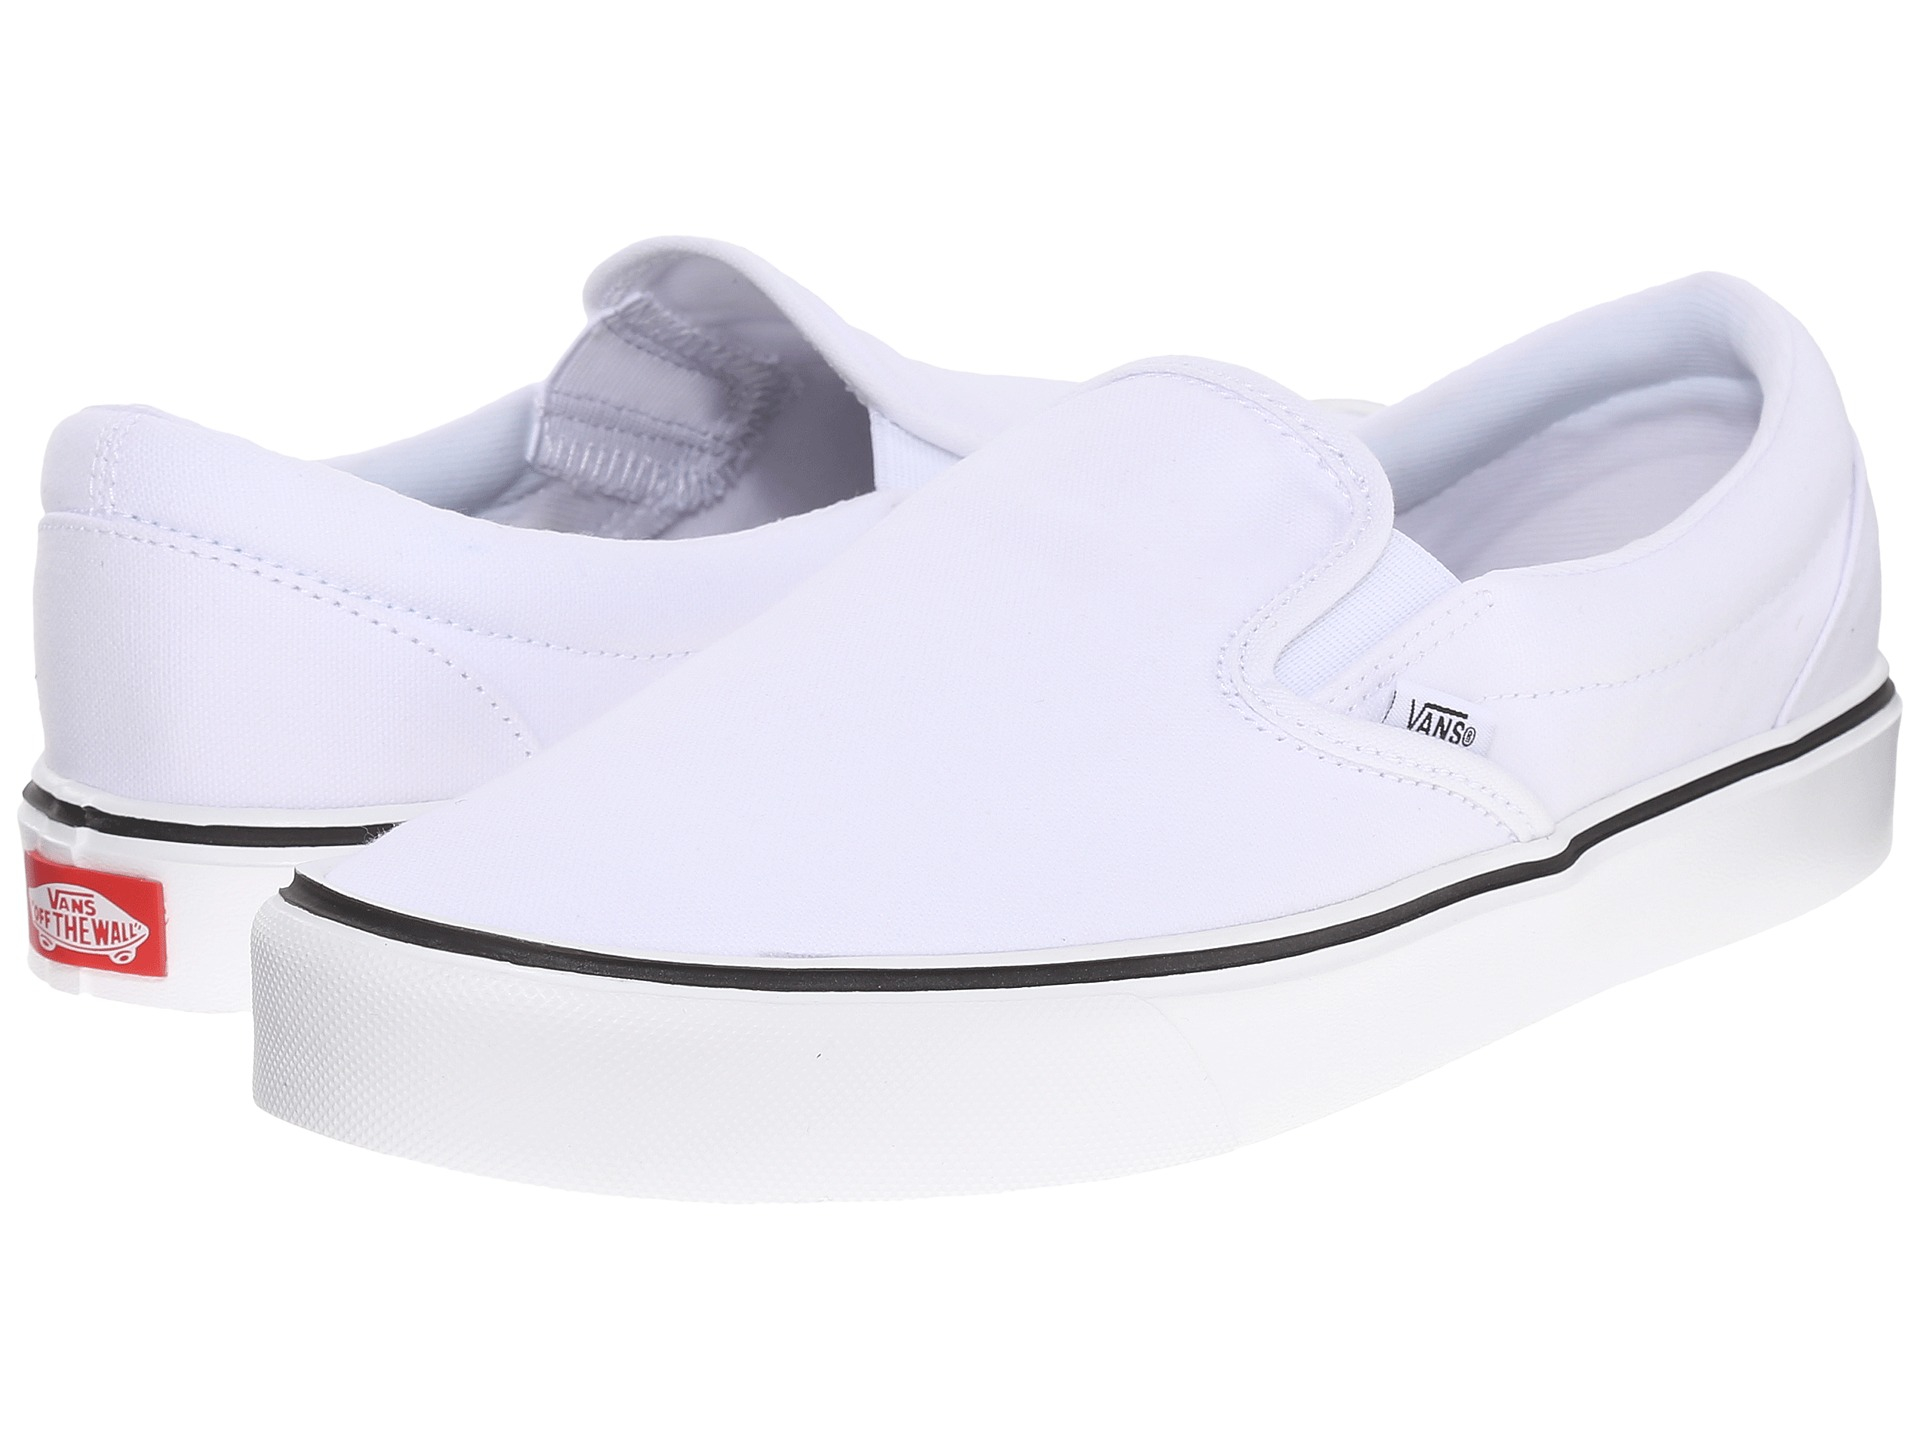 Lyst - Vans Slip-on Lite + in White for Men